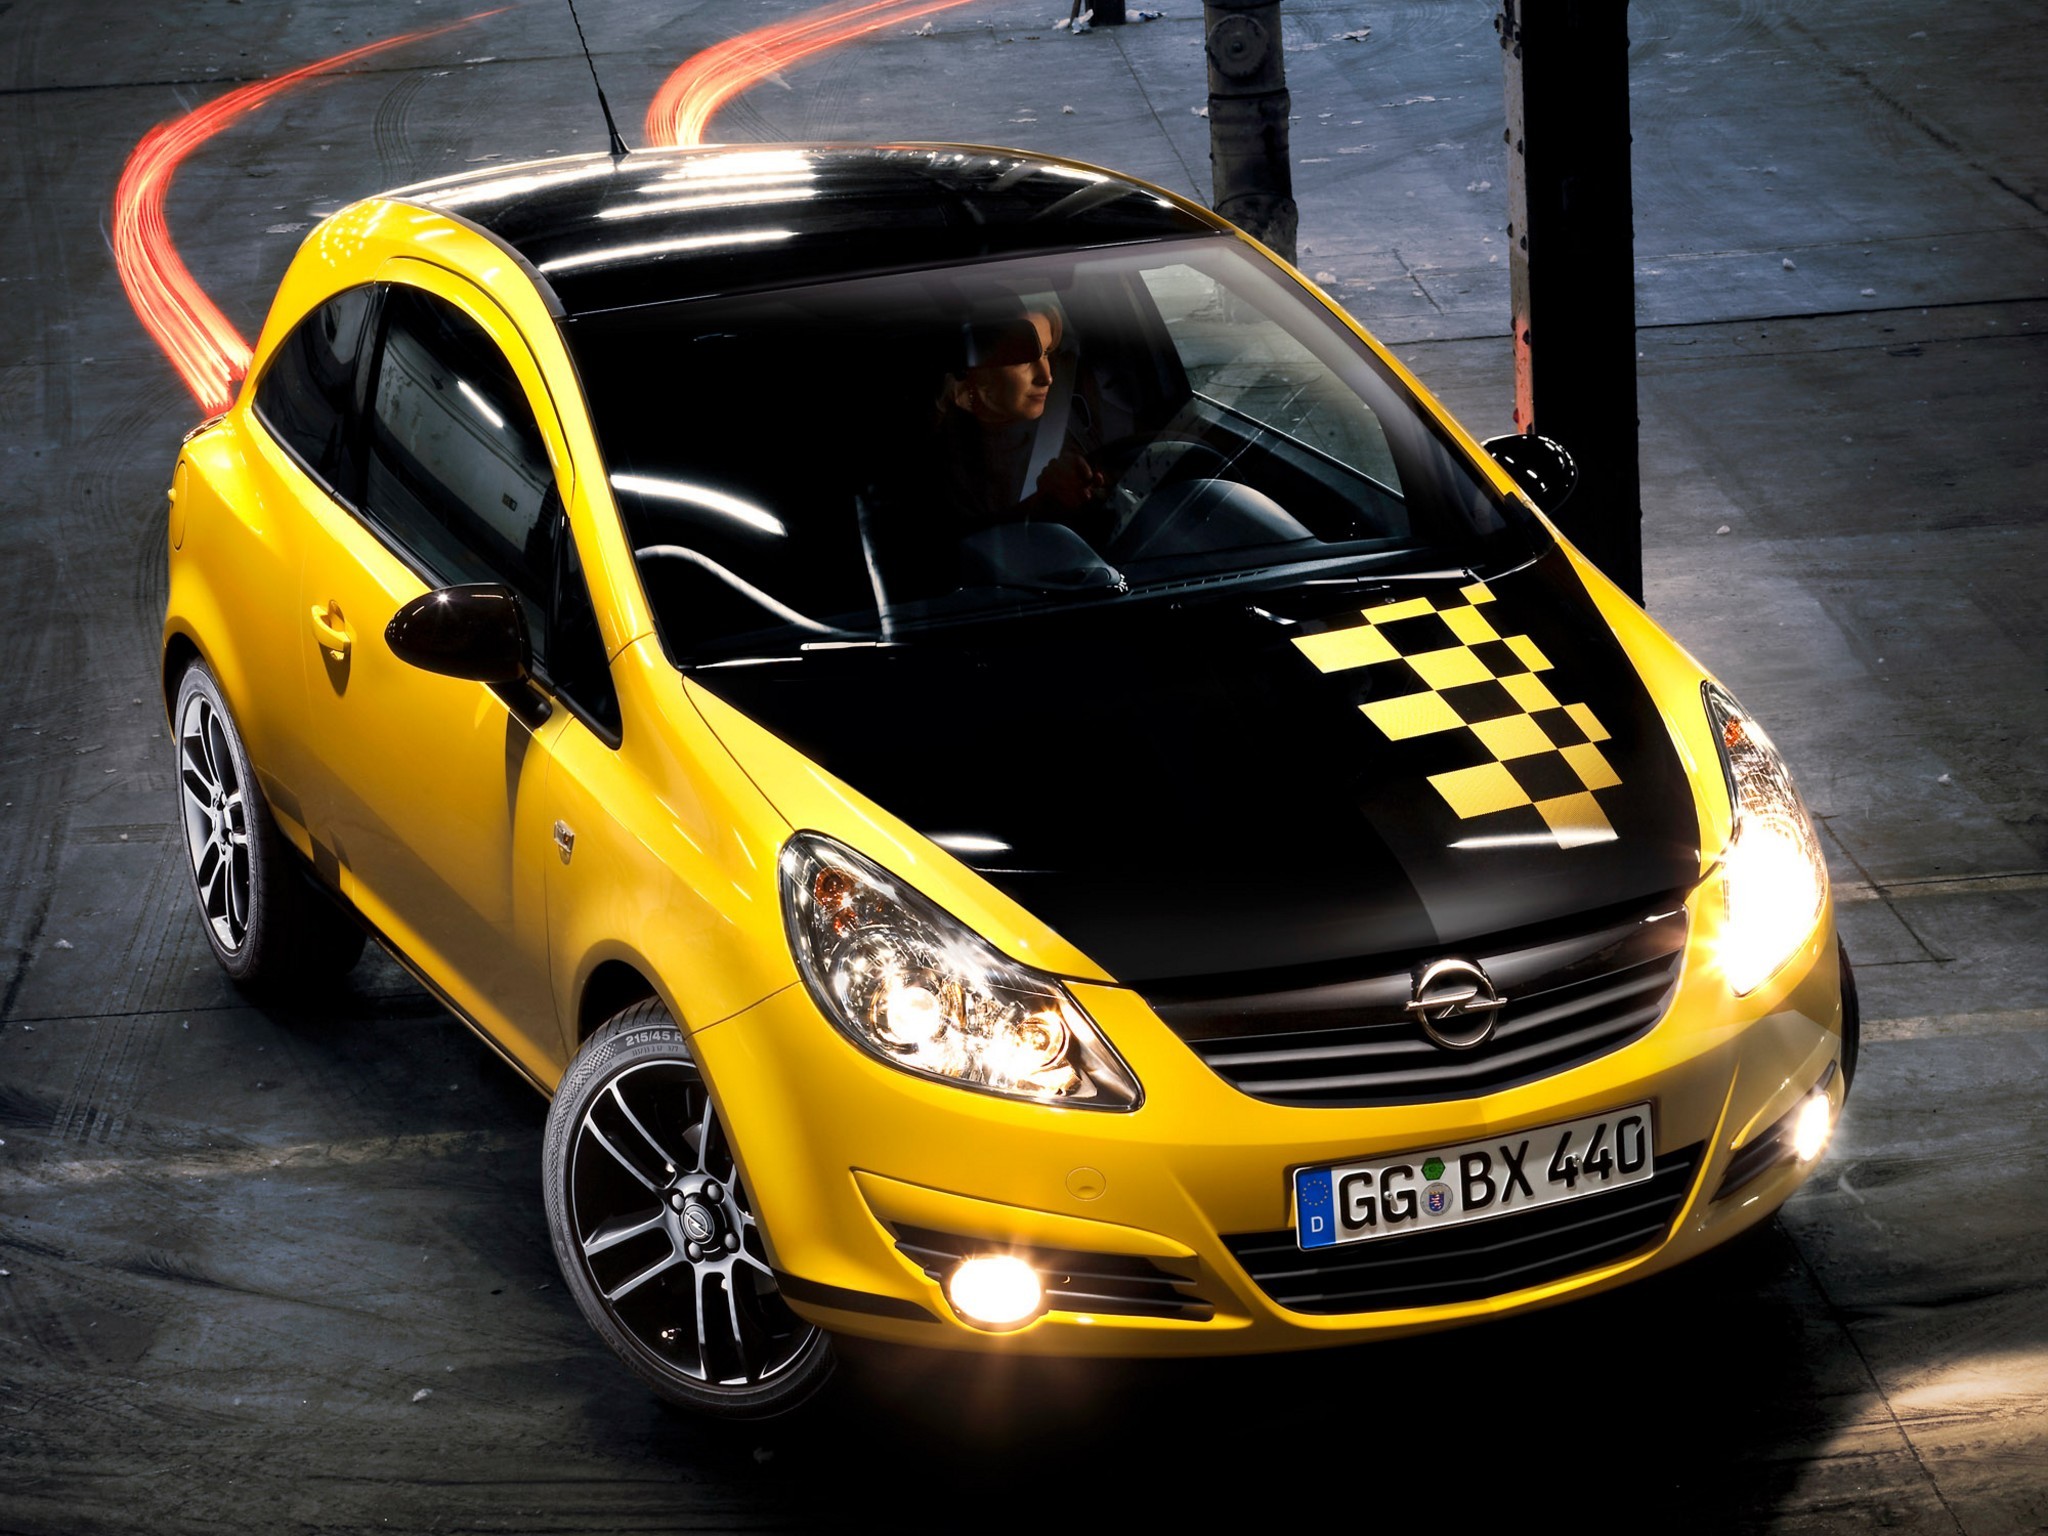 Opel Corsa D 3doors Sport 1.4 87HP specs, dimensions